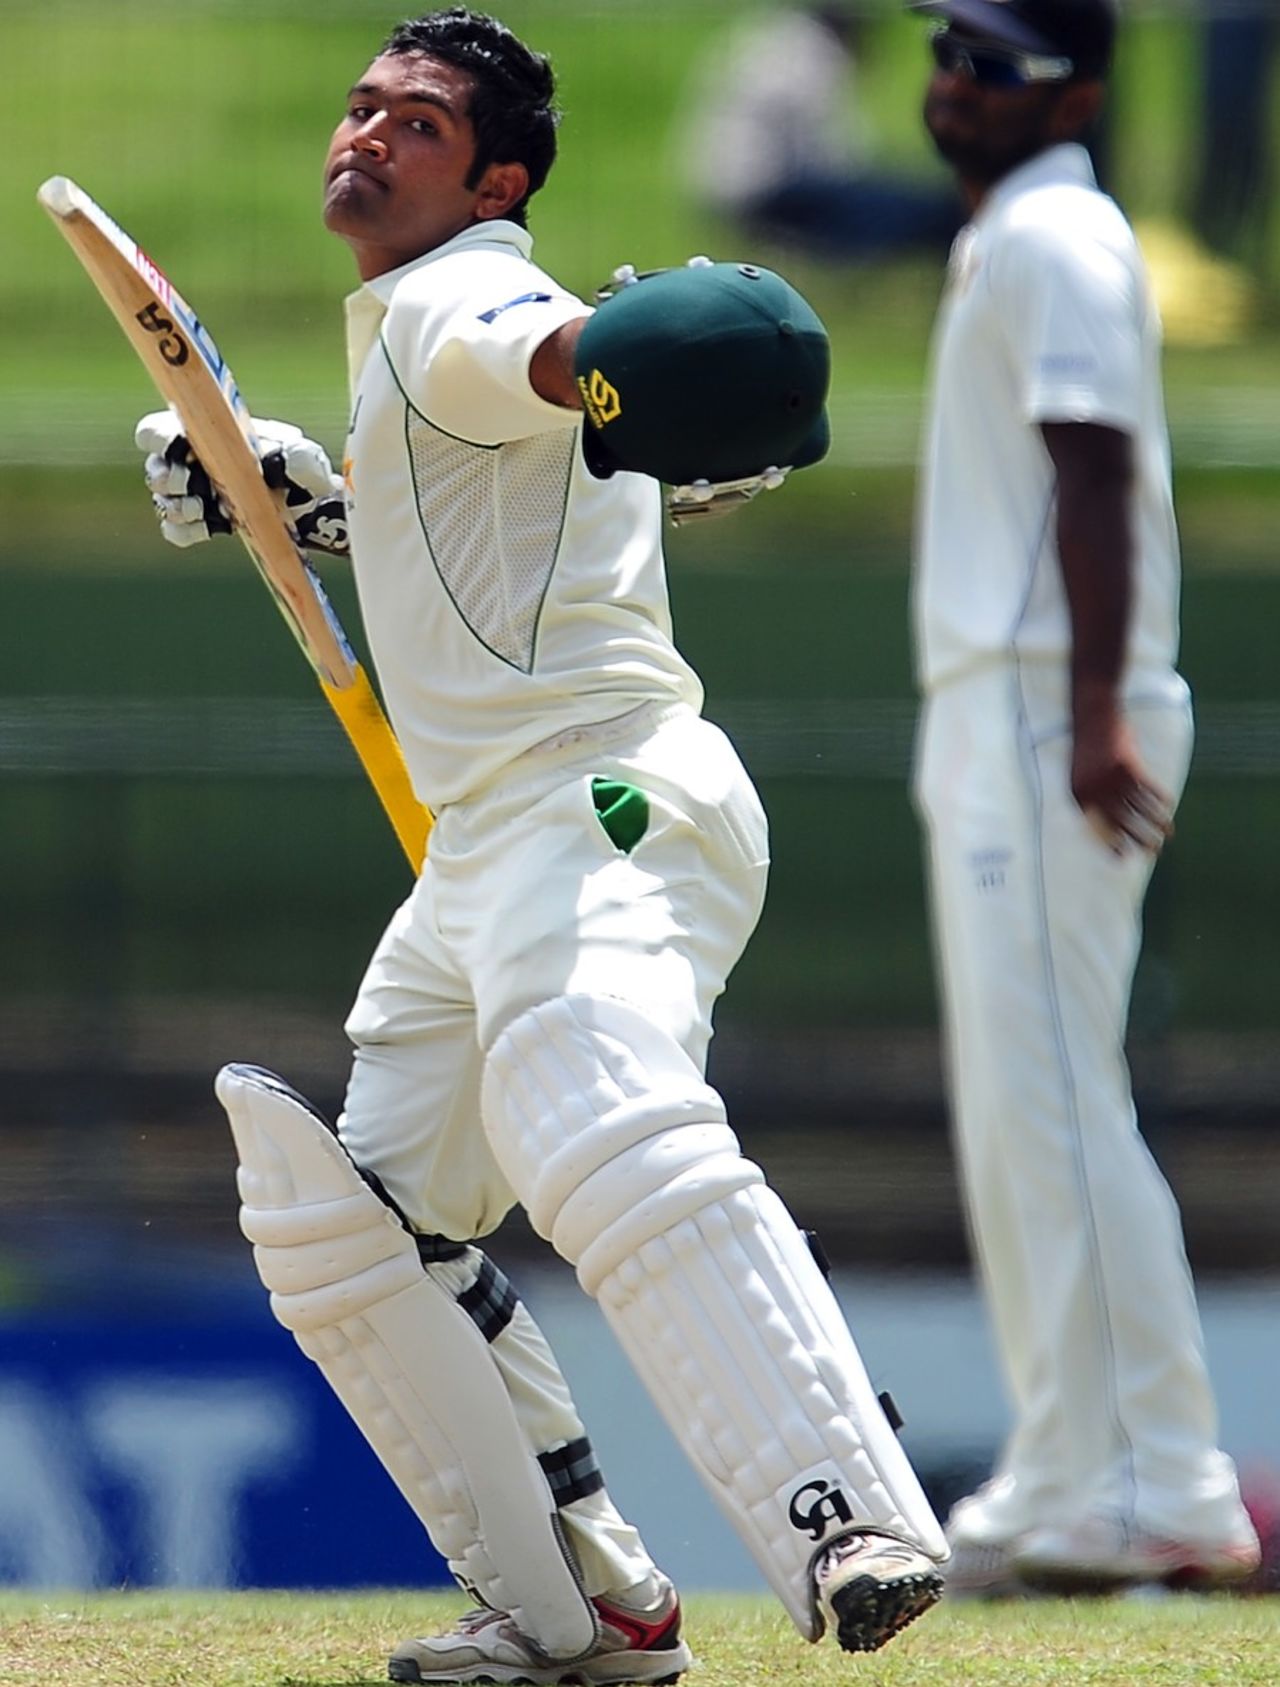 Asad Shafiq celebrates his hundred, Sri Lanka v Pakistan, 3rd Test, Pallekele, 5th day, July 12, 2012